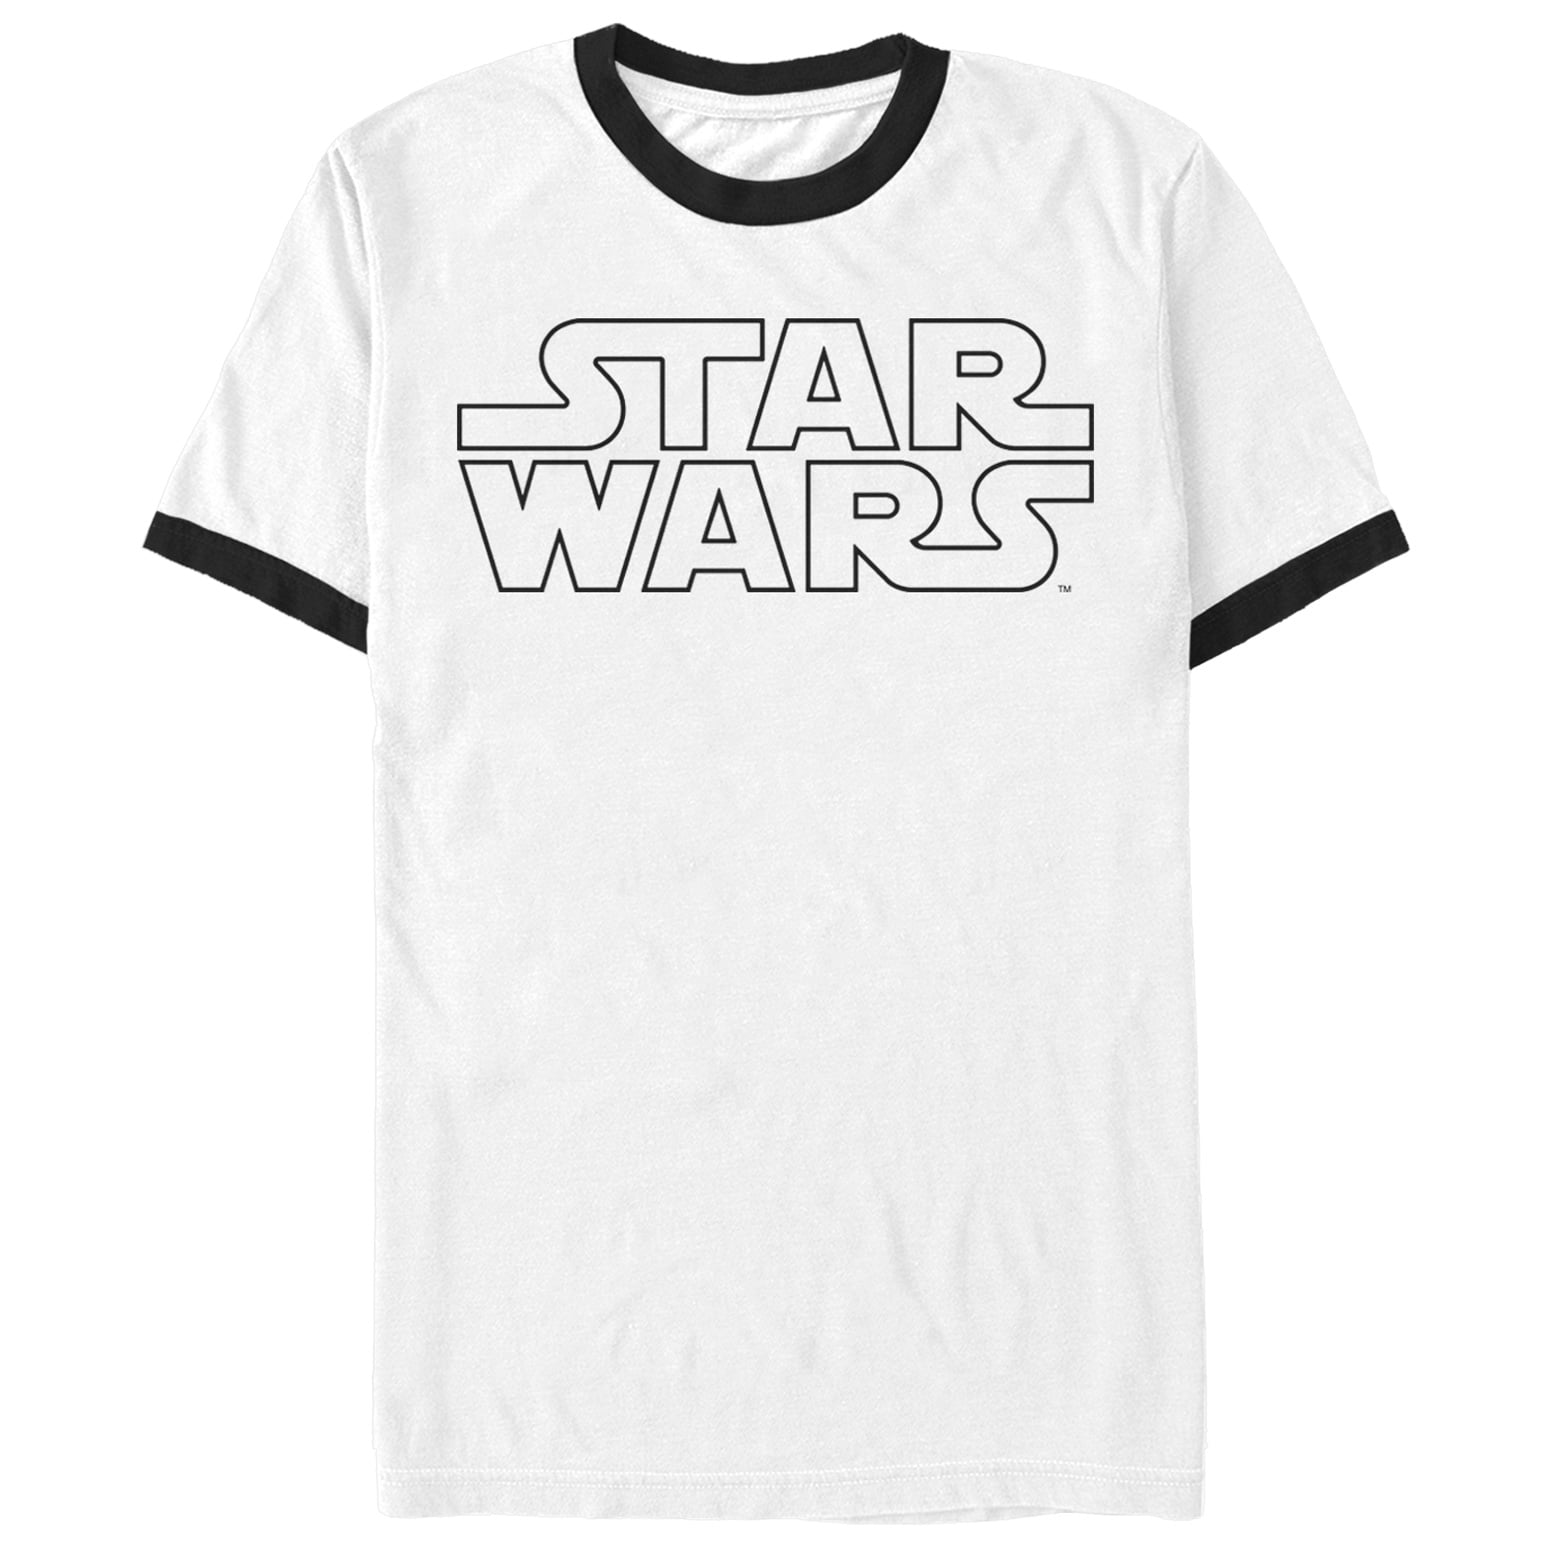 Star Wars - Star Wars Men's Sleek Movie Logo White/black Ringer T-Shirt ...